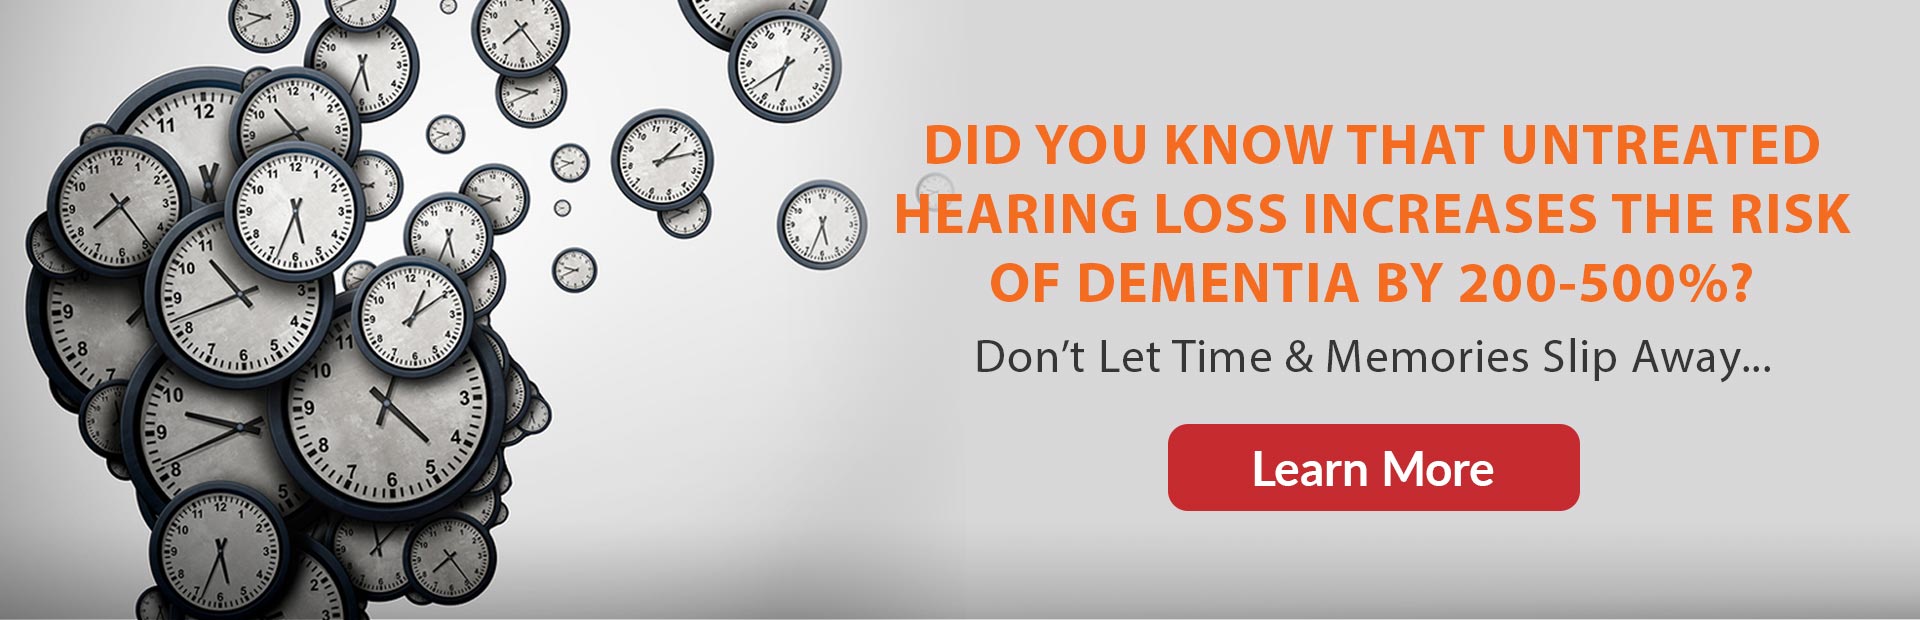 sherman oaks ca hearing loss & dementia